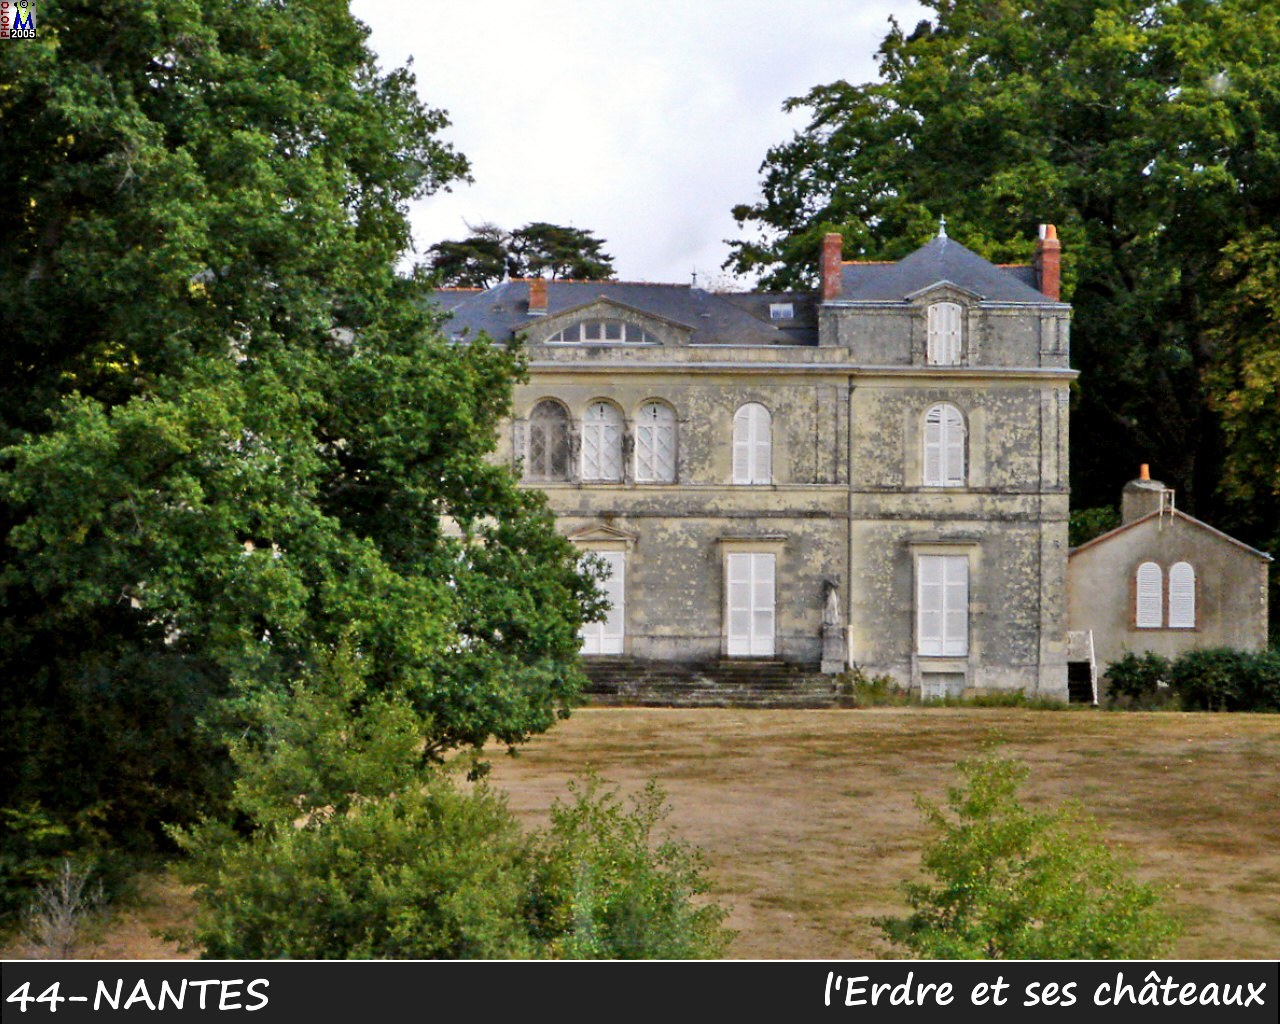 44NANTES_erdre-chateau_110.jpg